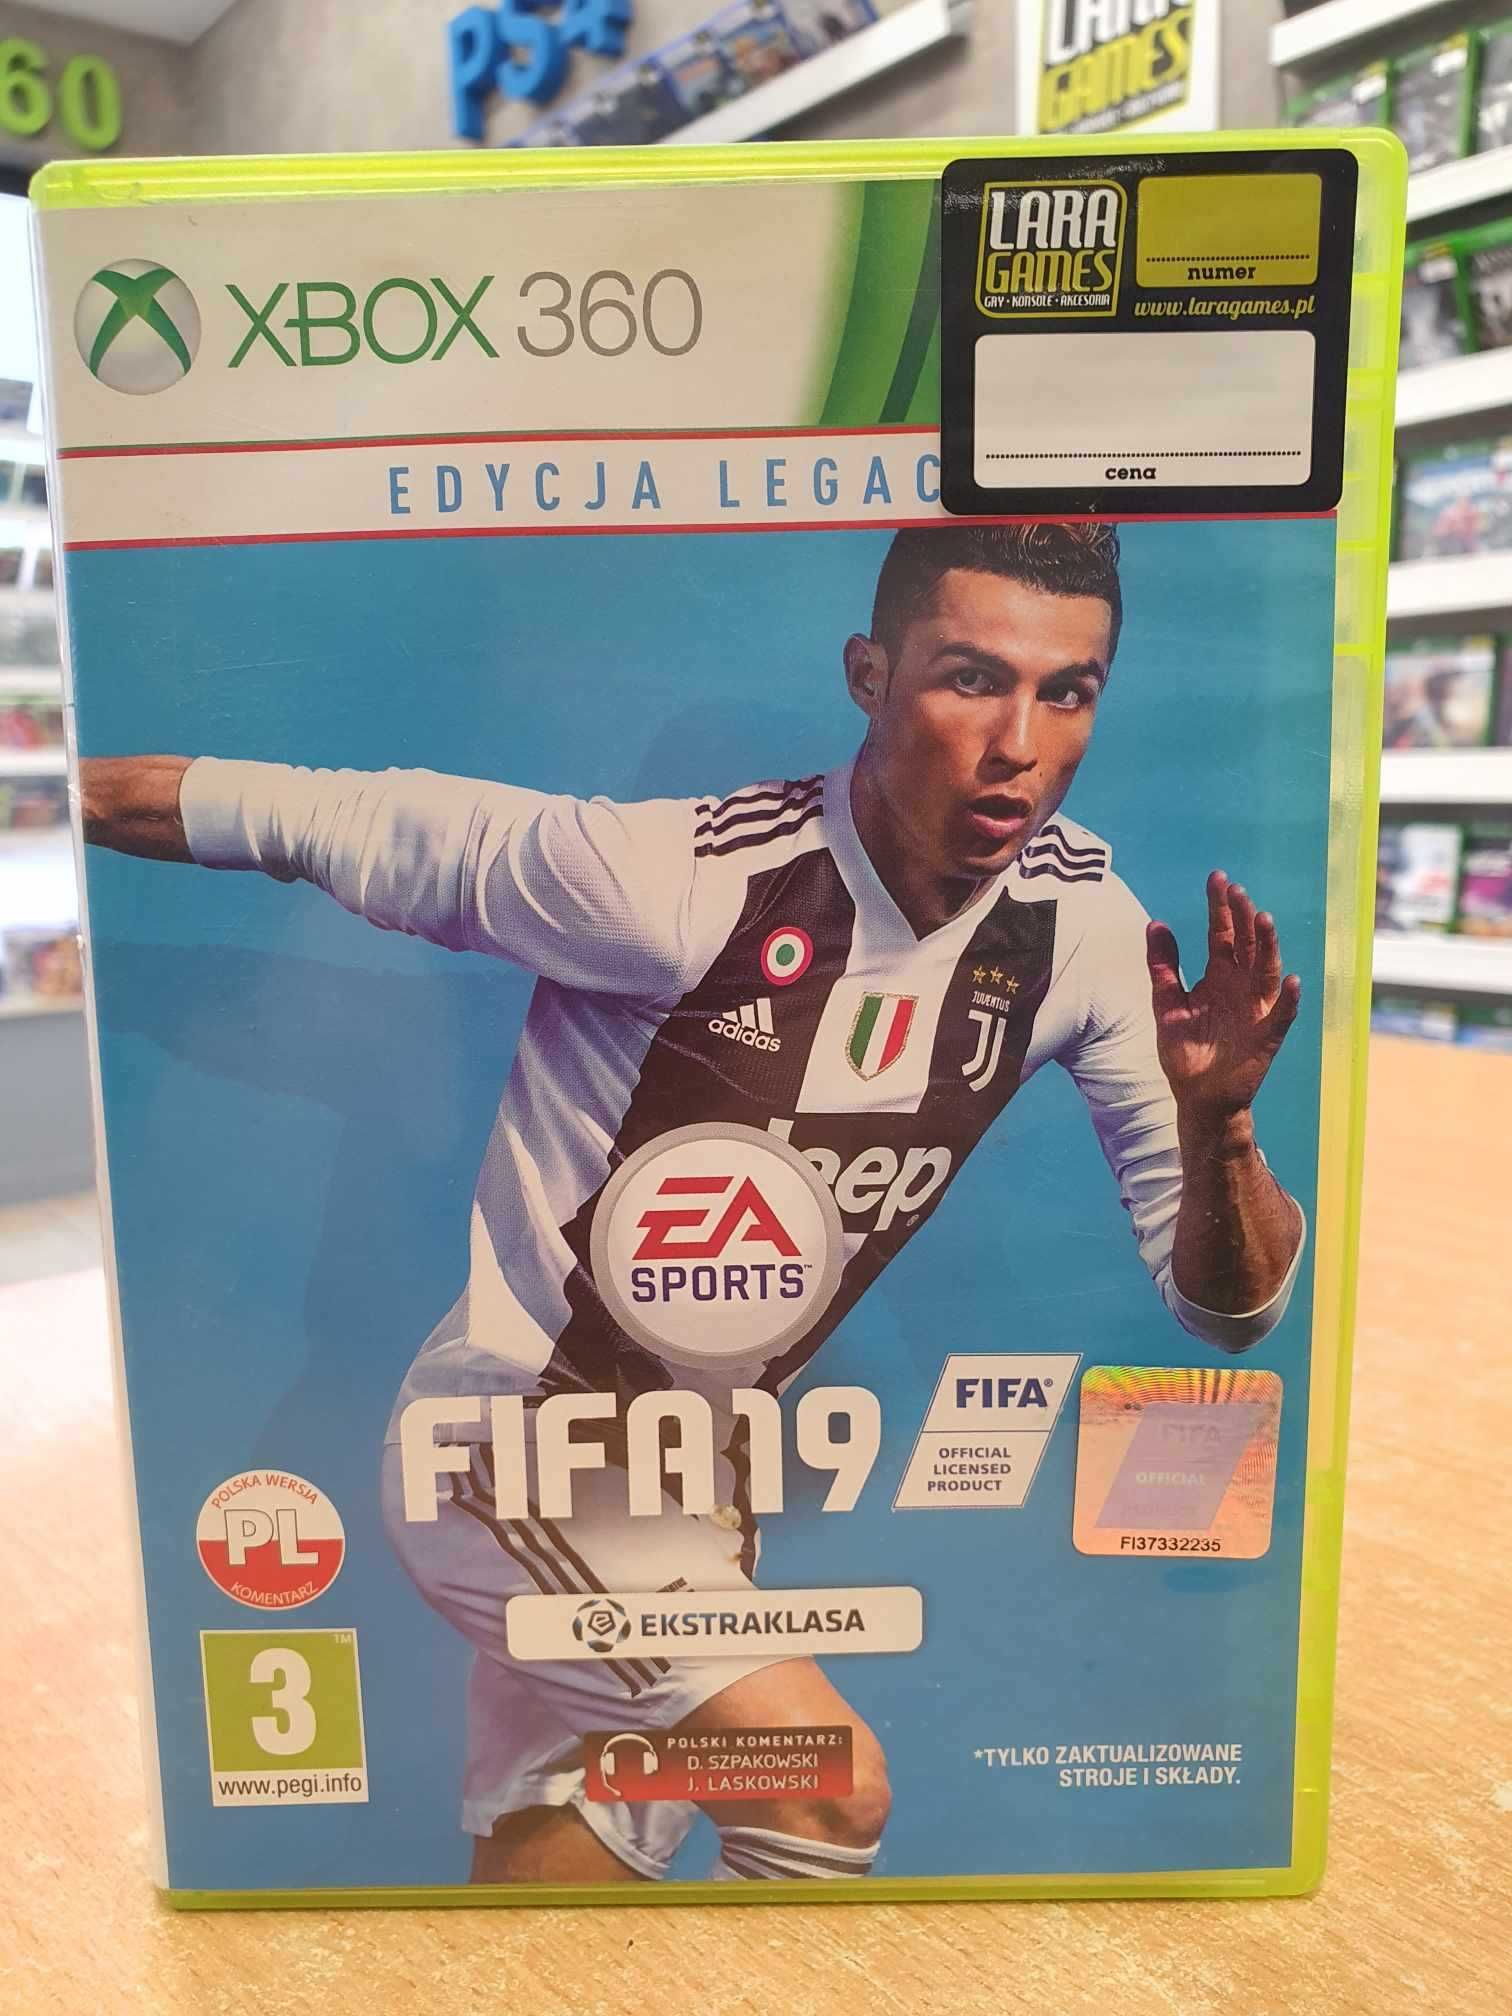 FIFA 19 XBOX 360 PL Skup/Sprzedaż/Wymiana Lara Games